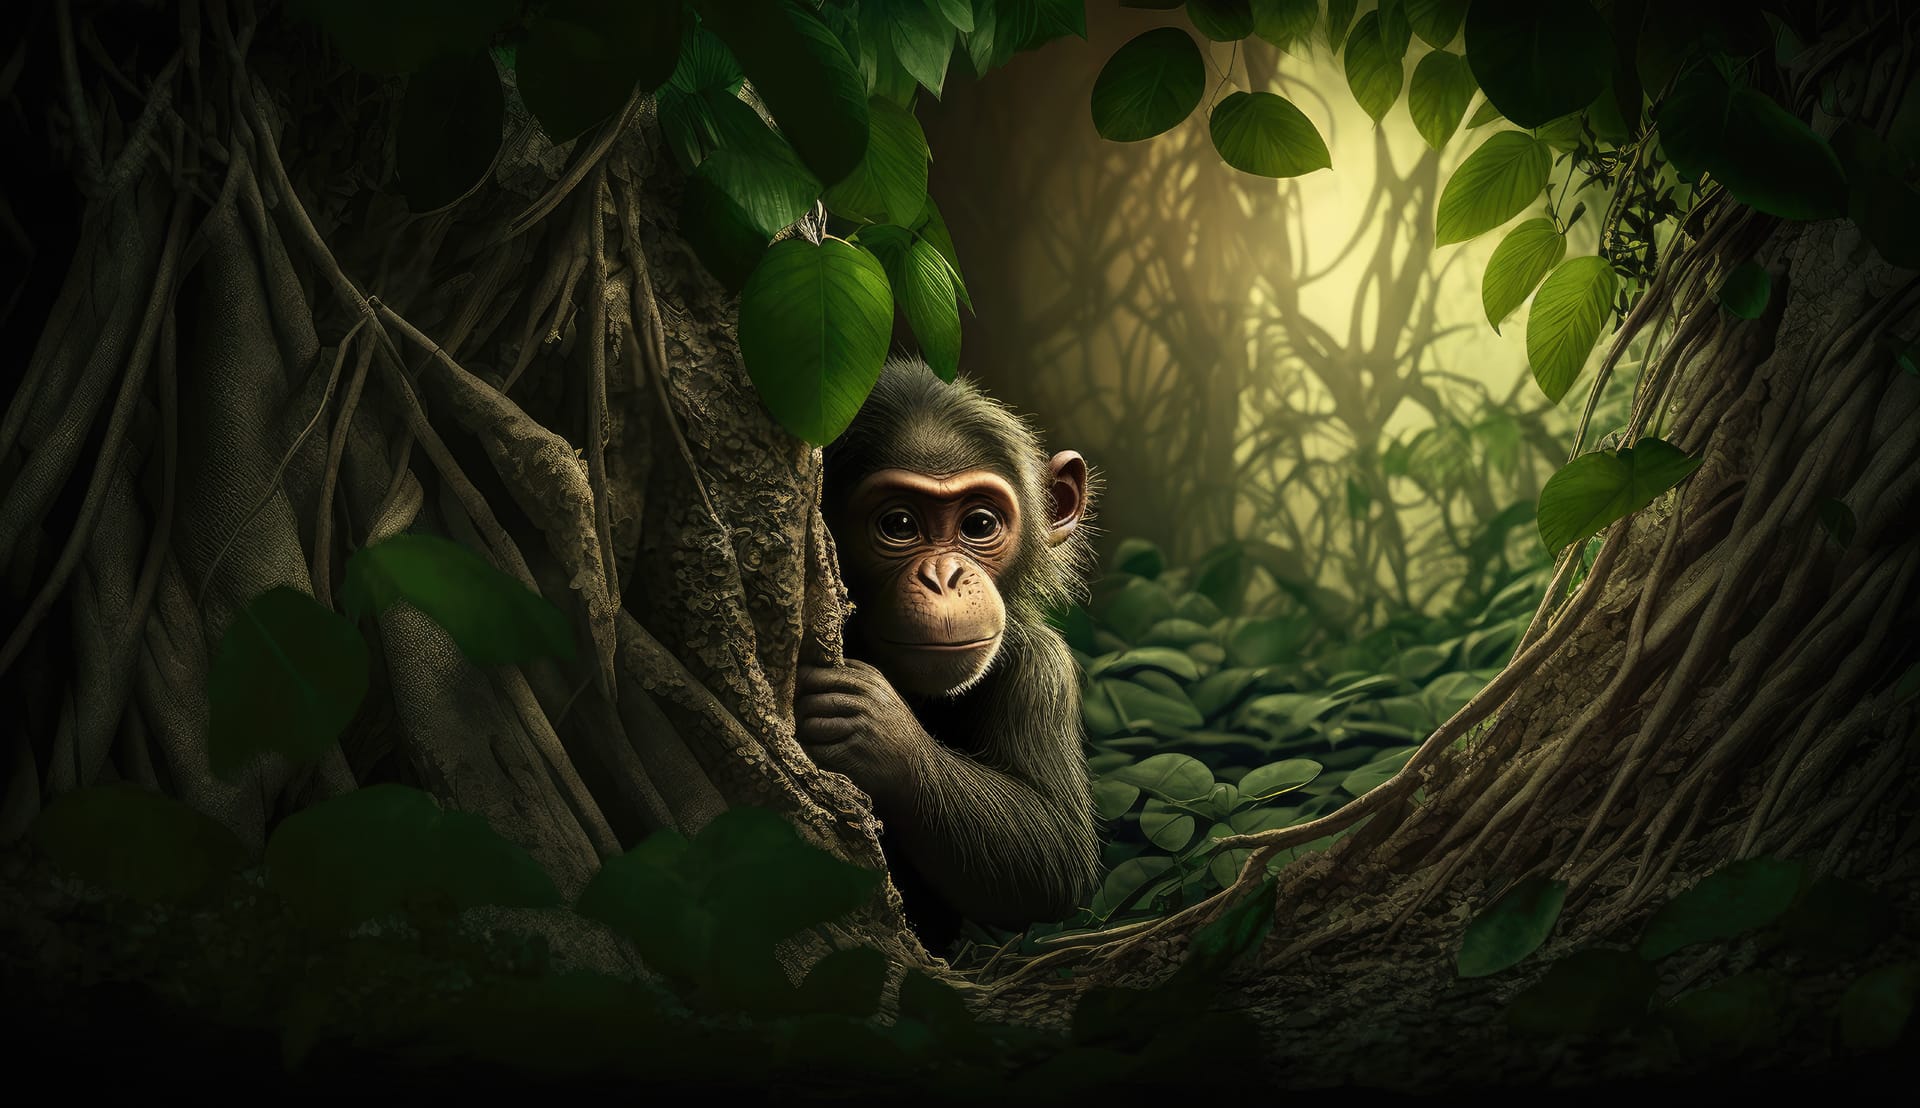 Monkey jungle with tree background animal image